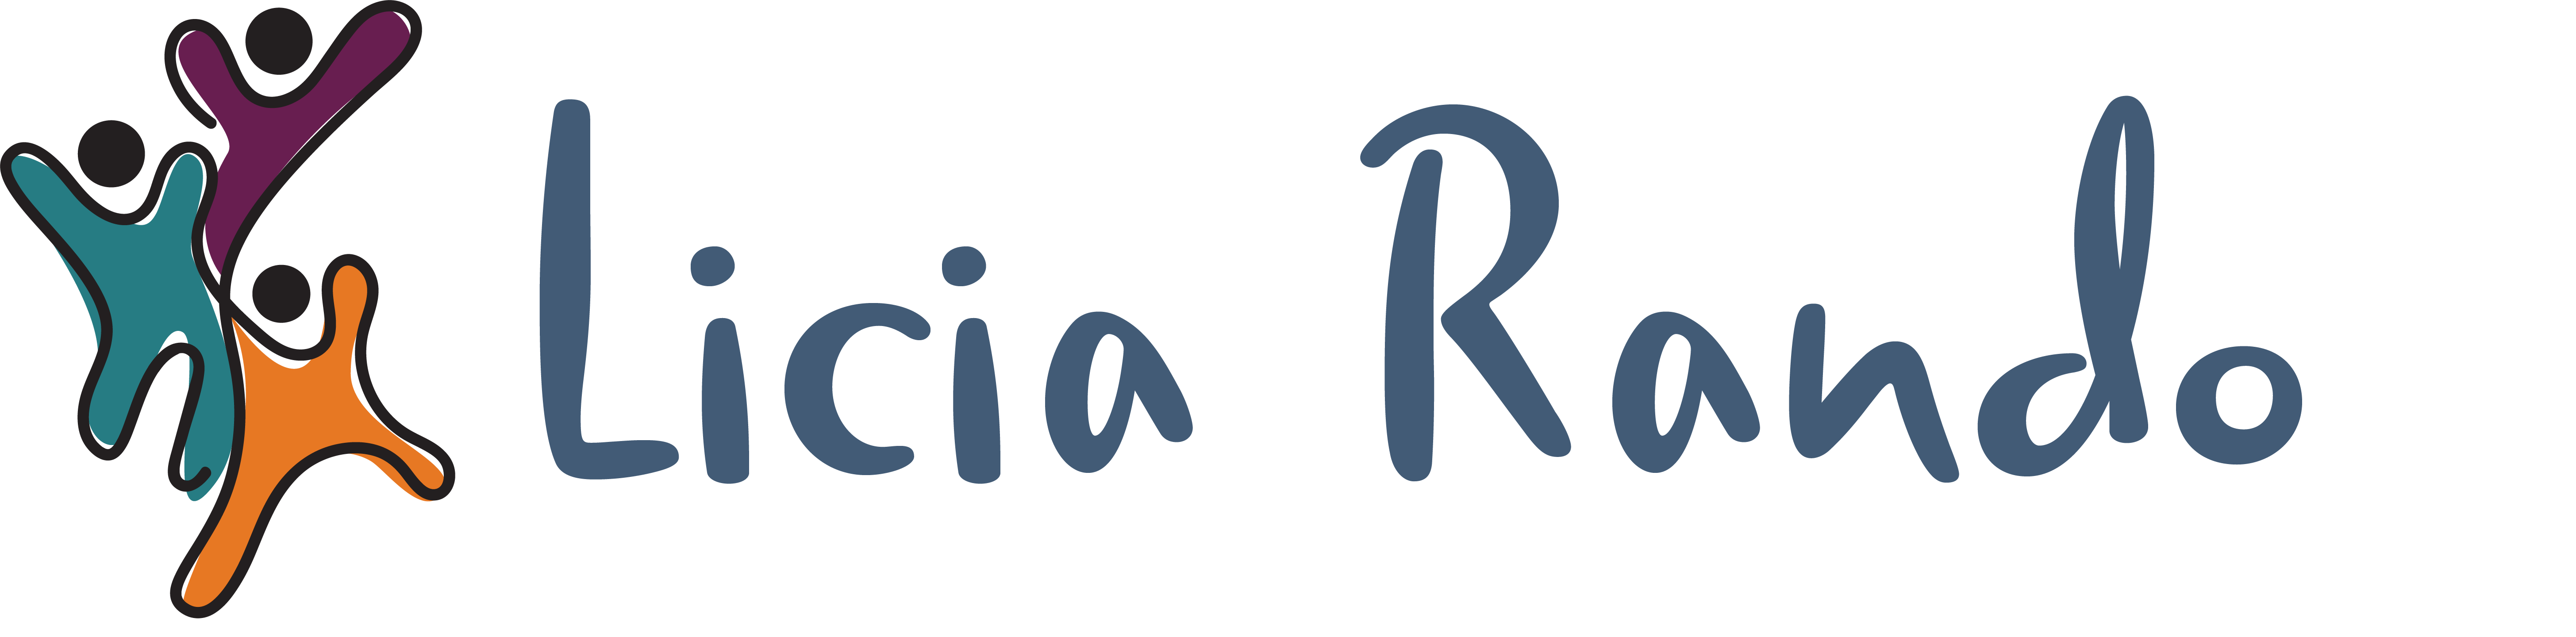 Licia-Rando-Logo